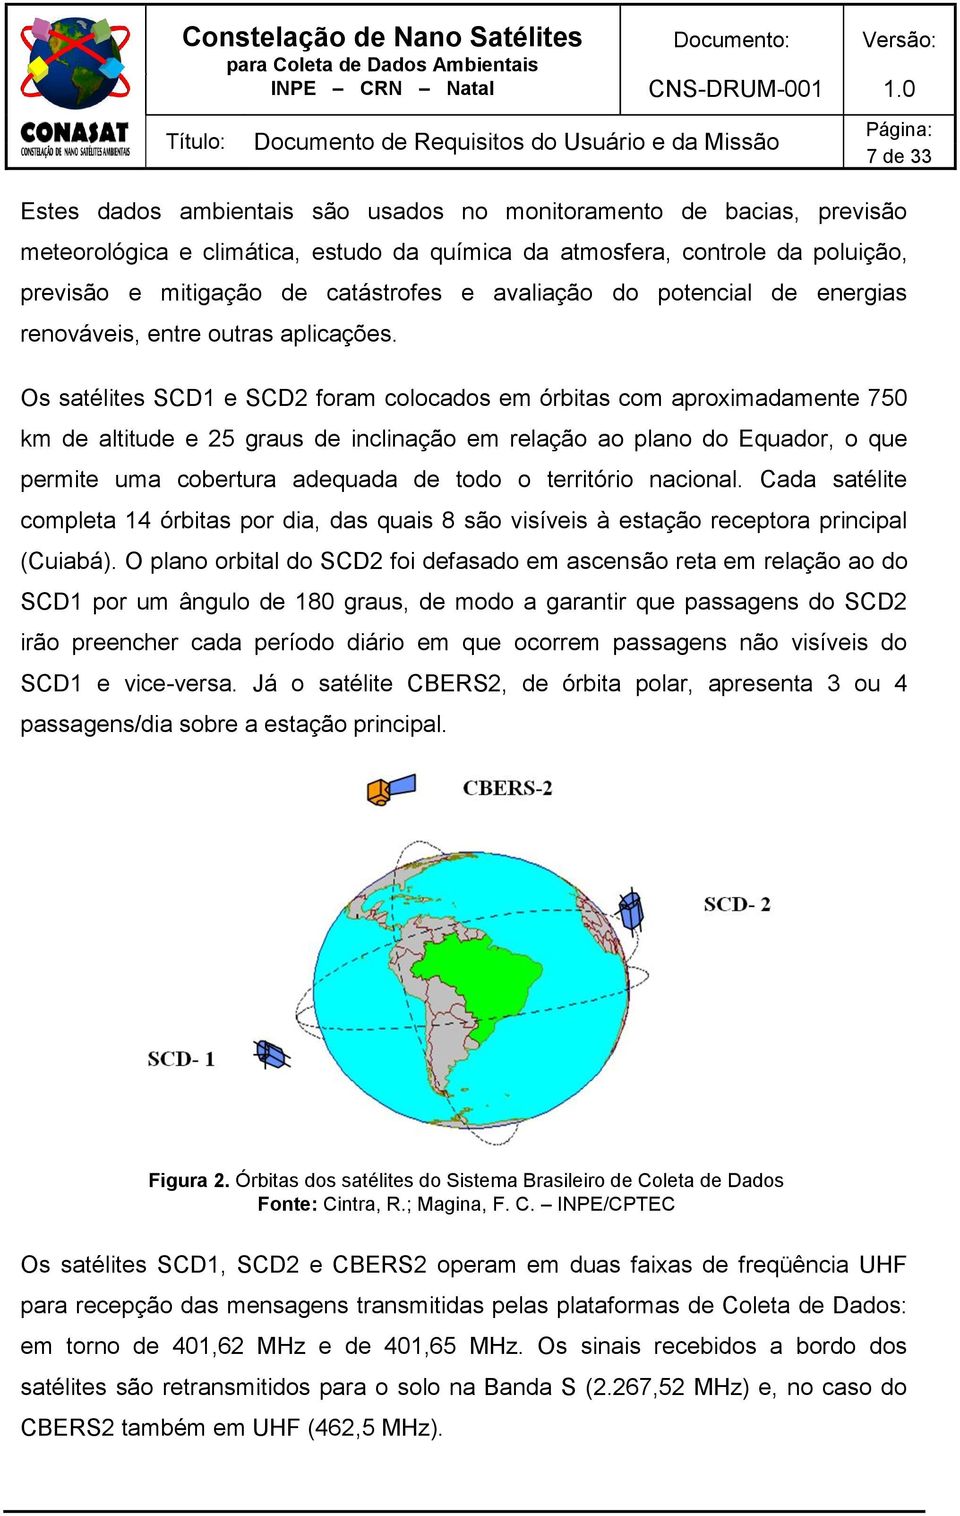 Os satélites SCD1 e SCD2 foram colocados em órbitas com aproximadamente 750 km de altitude e 25 graus de inclinação em relação ao plano do Equador, o que permite uma cobertura adequada de todo o